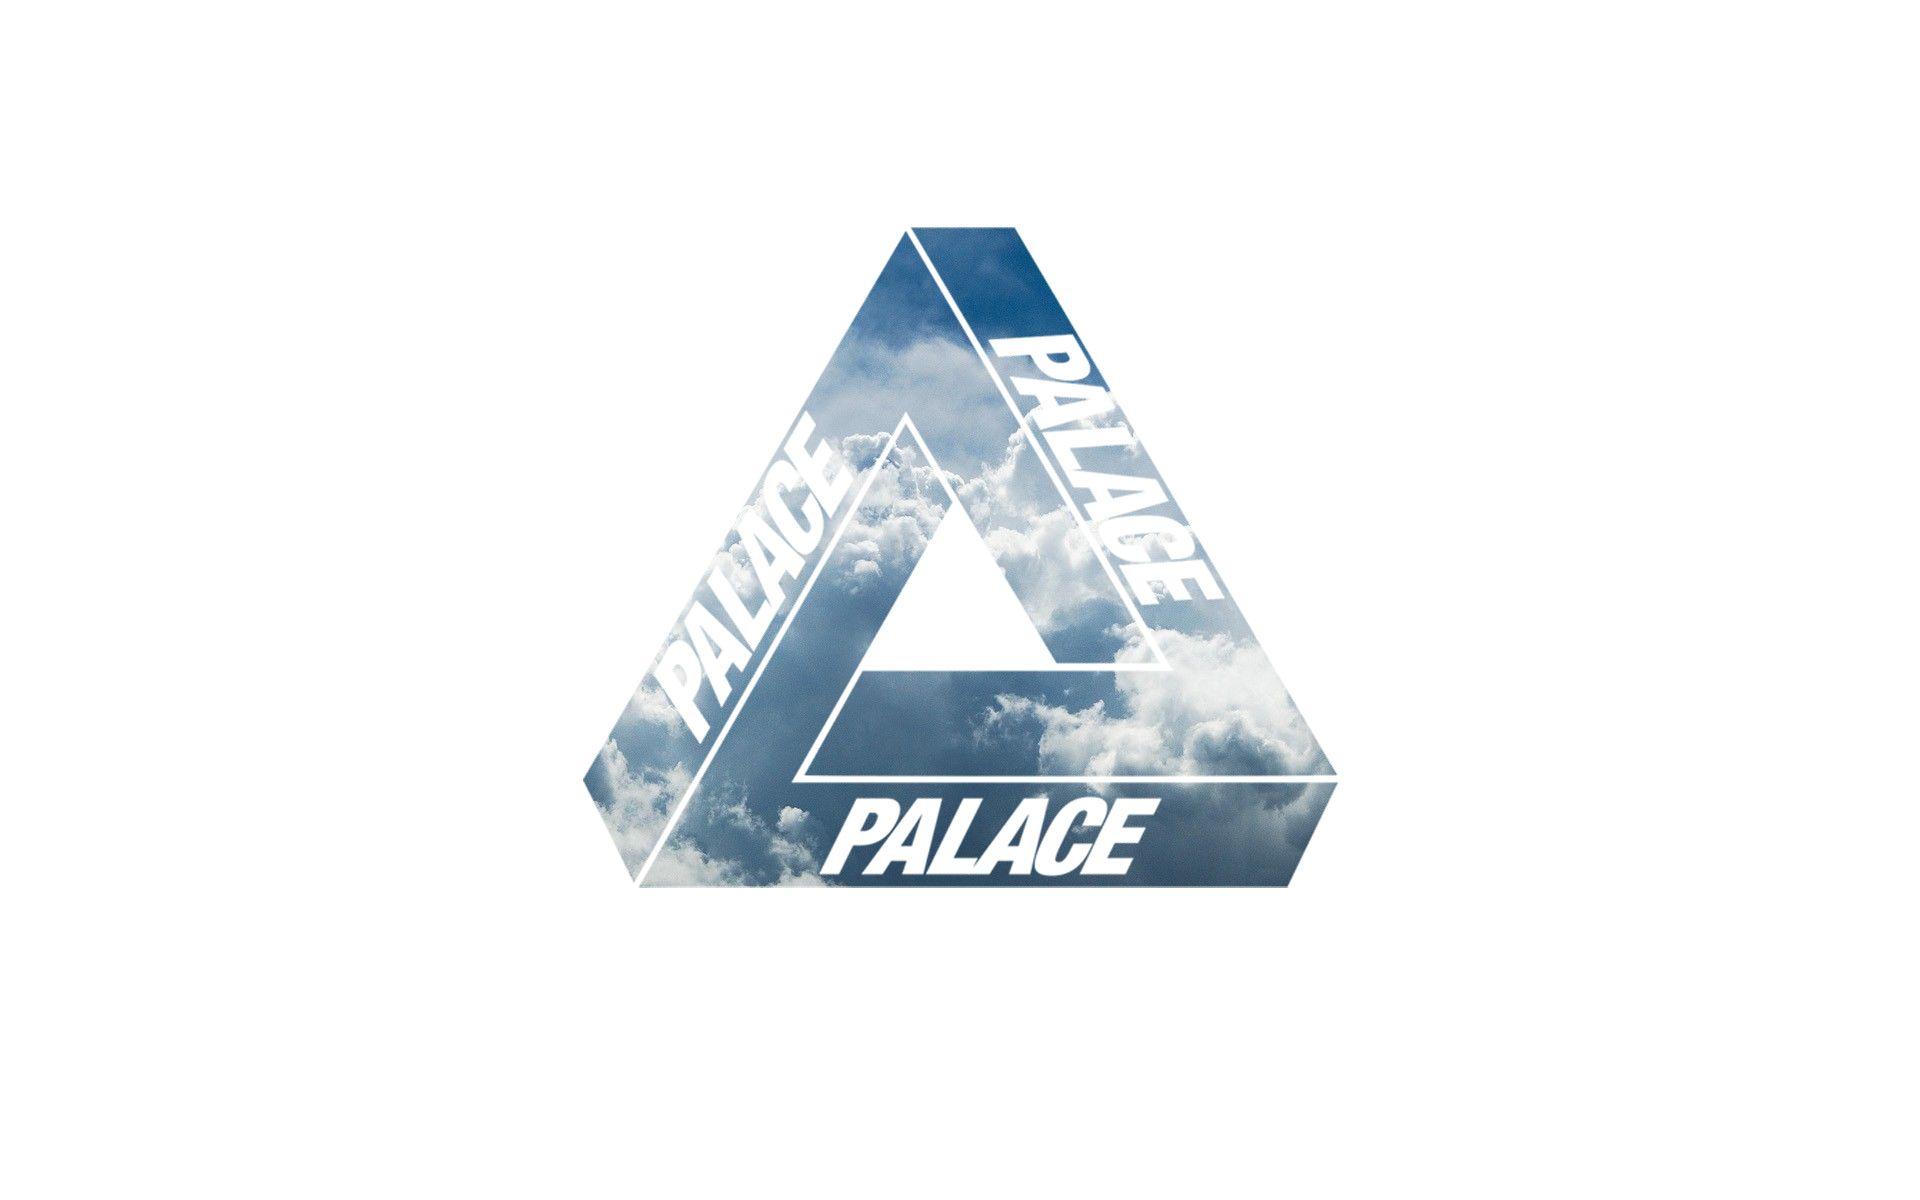 Palace Triangle Logo - Palace Wallpaper